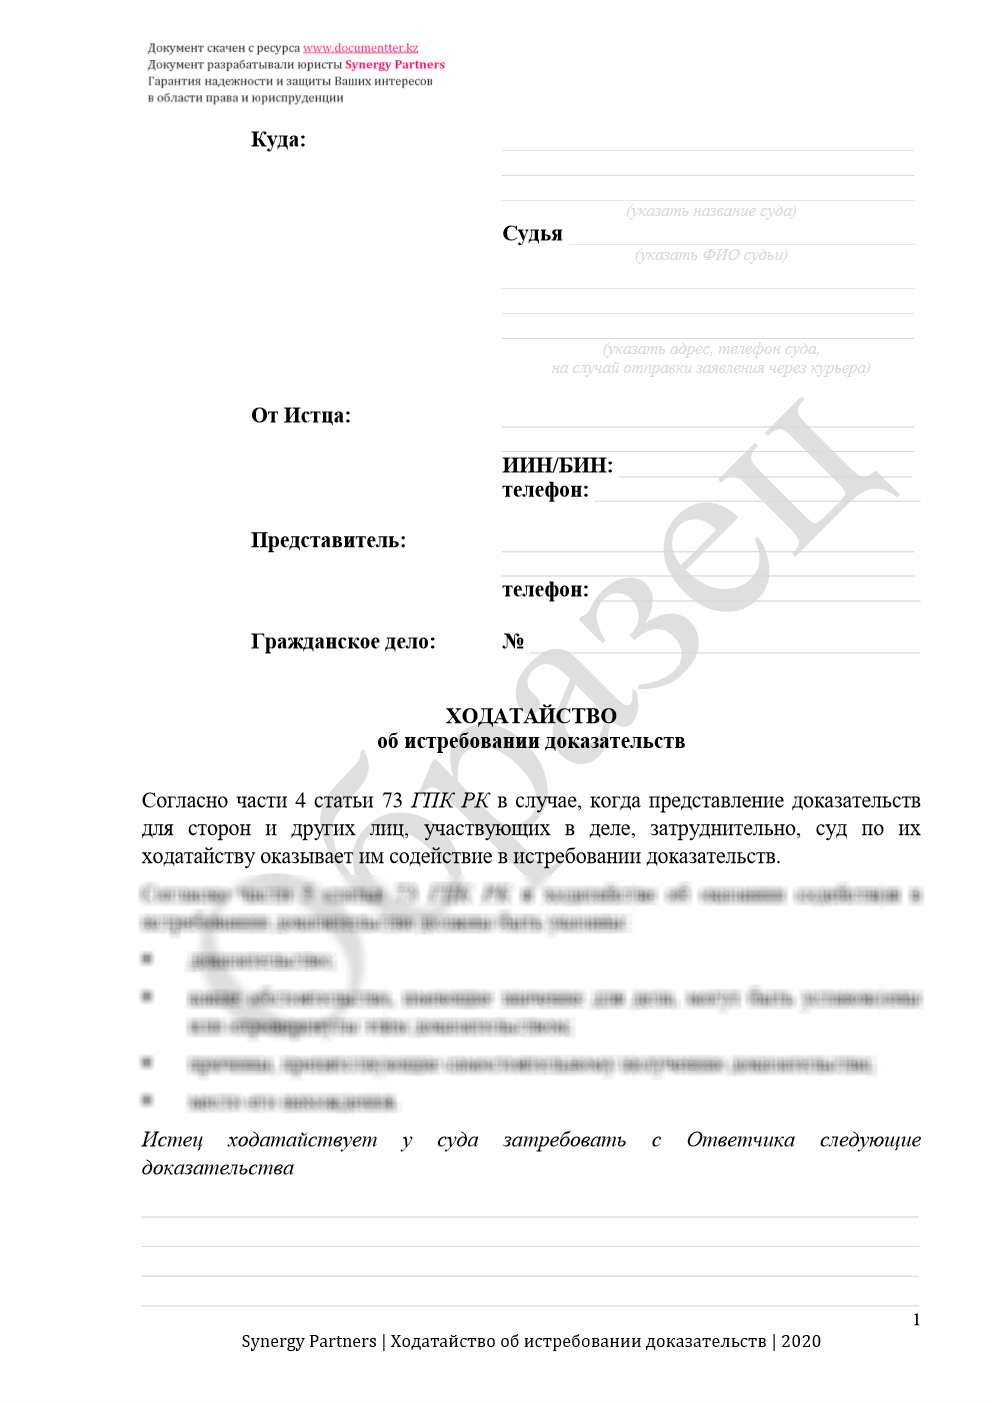 Ходатайство об истребовании доказательств 8 | documentter.kz в Казахстане 